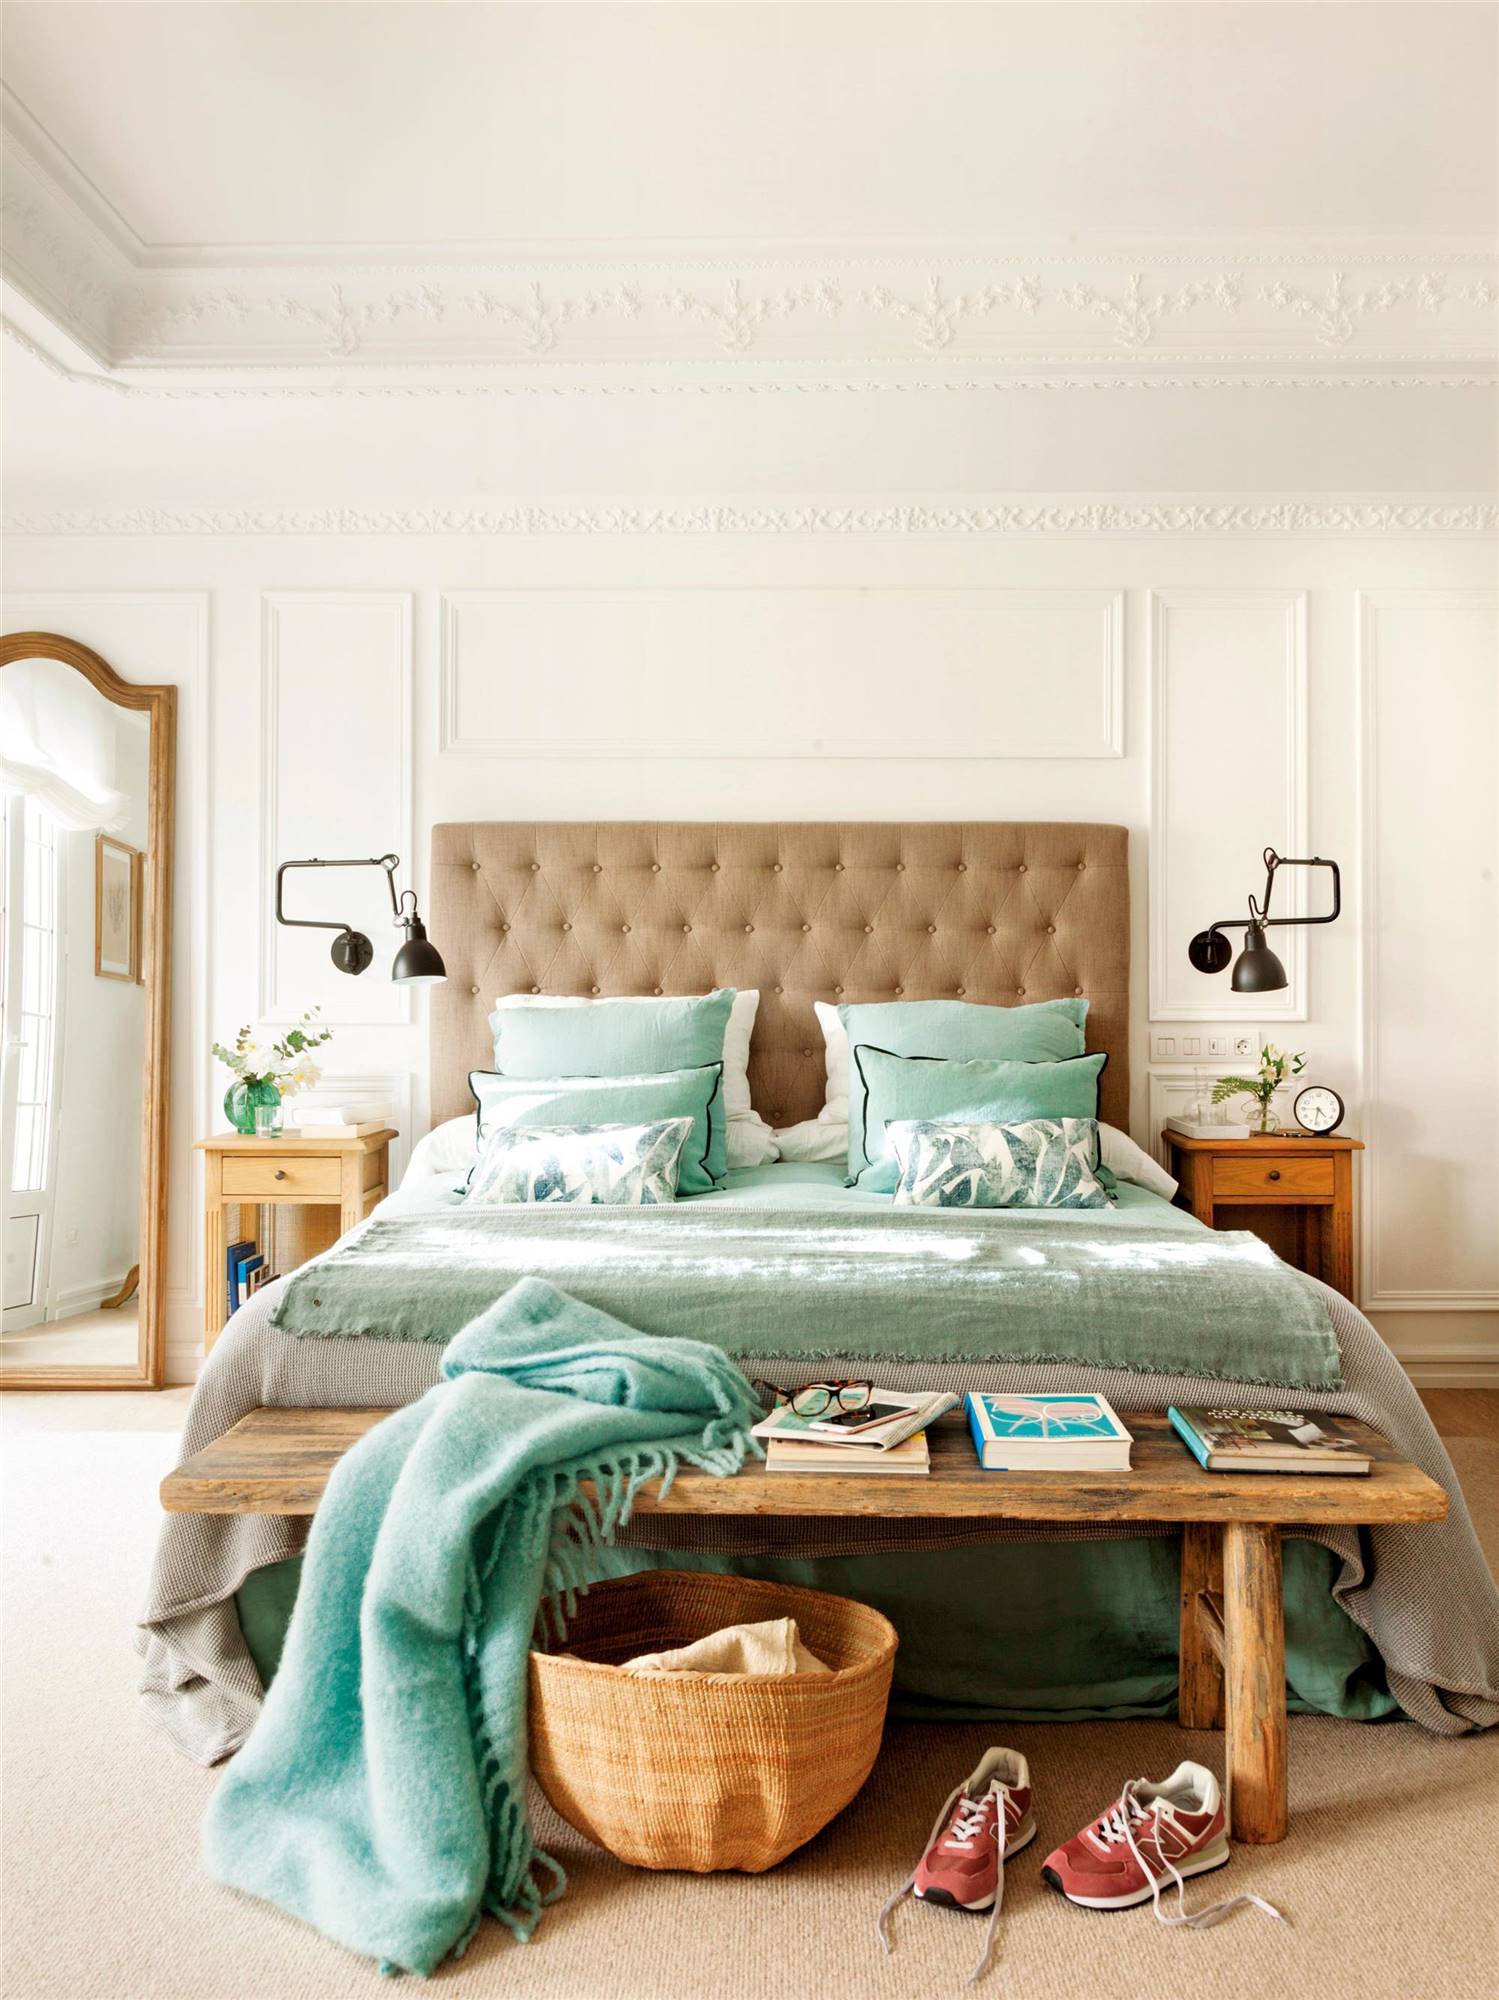 Dormitorio con cabecero de capitoné, banco de madera y molduras en pared.